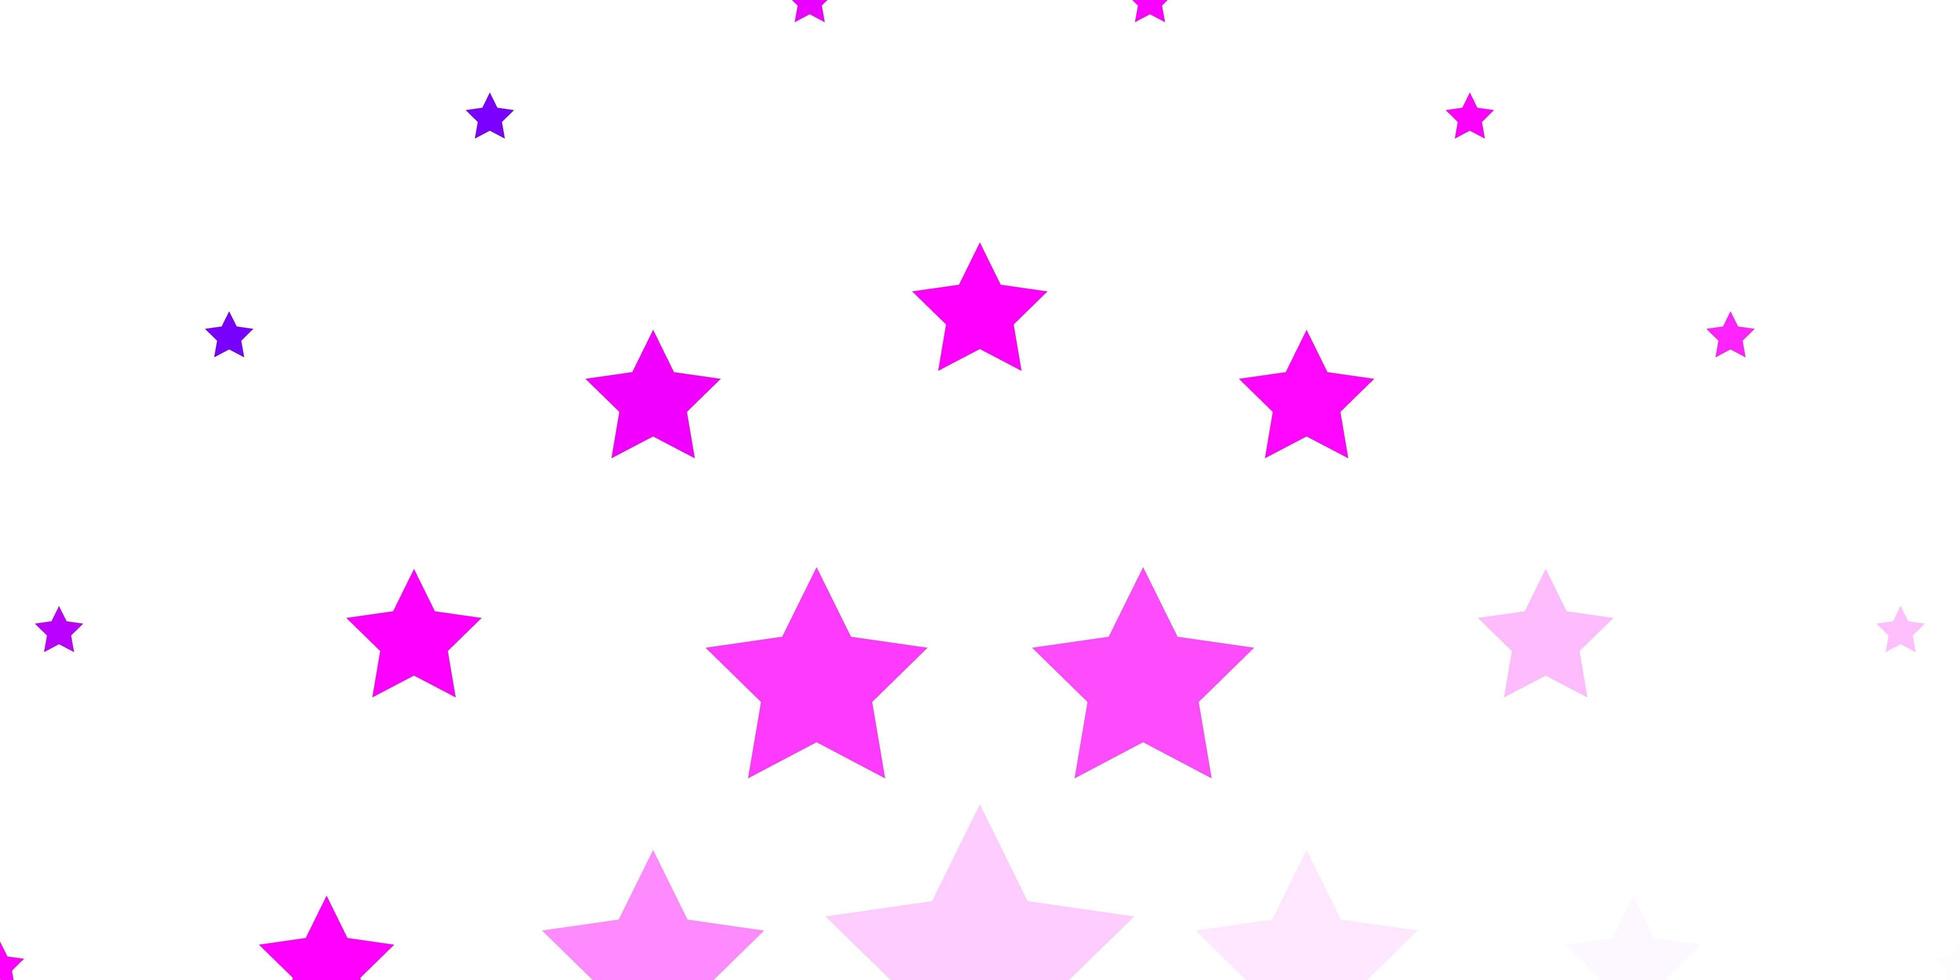 modelo de vetor rosa claro com estrelas de néon brilhando ilustração colorida com padrão de estrelas pequenas e grandes para páginas de destino de sites